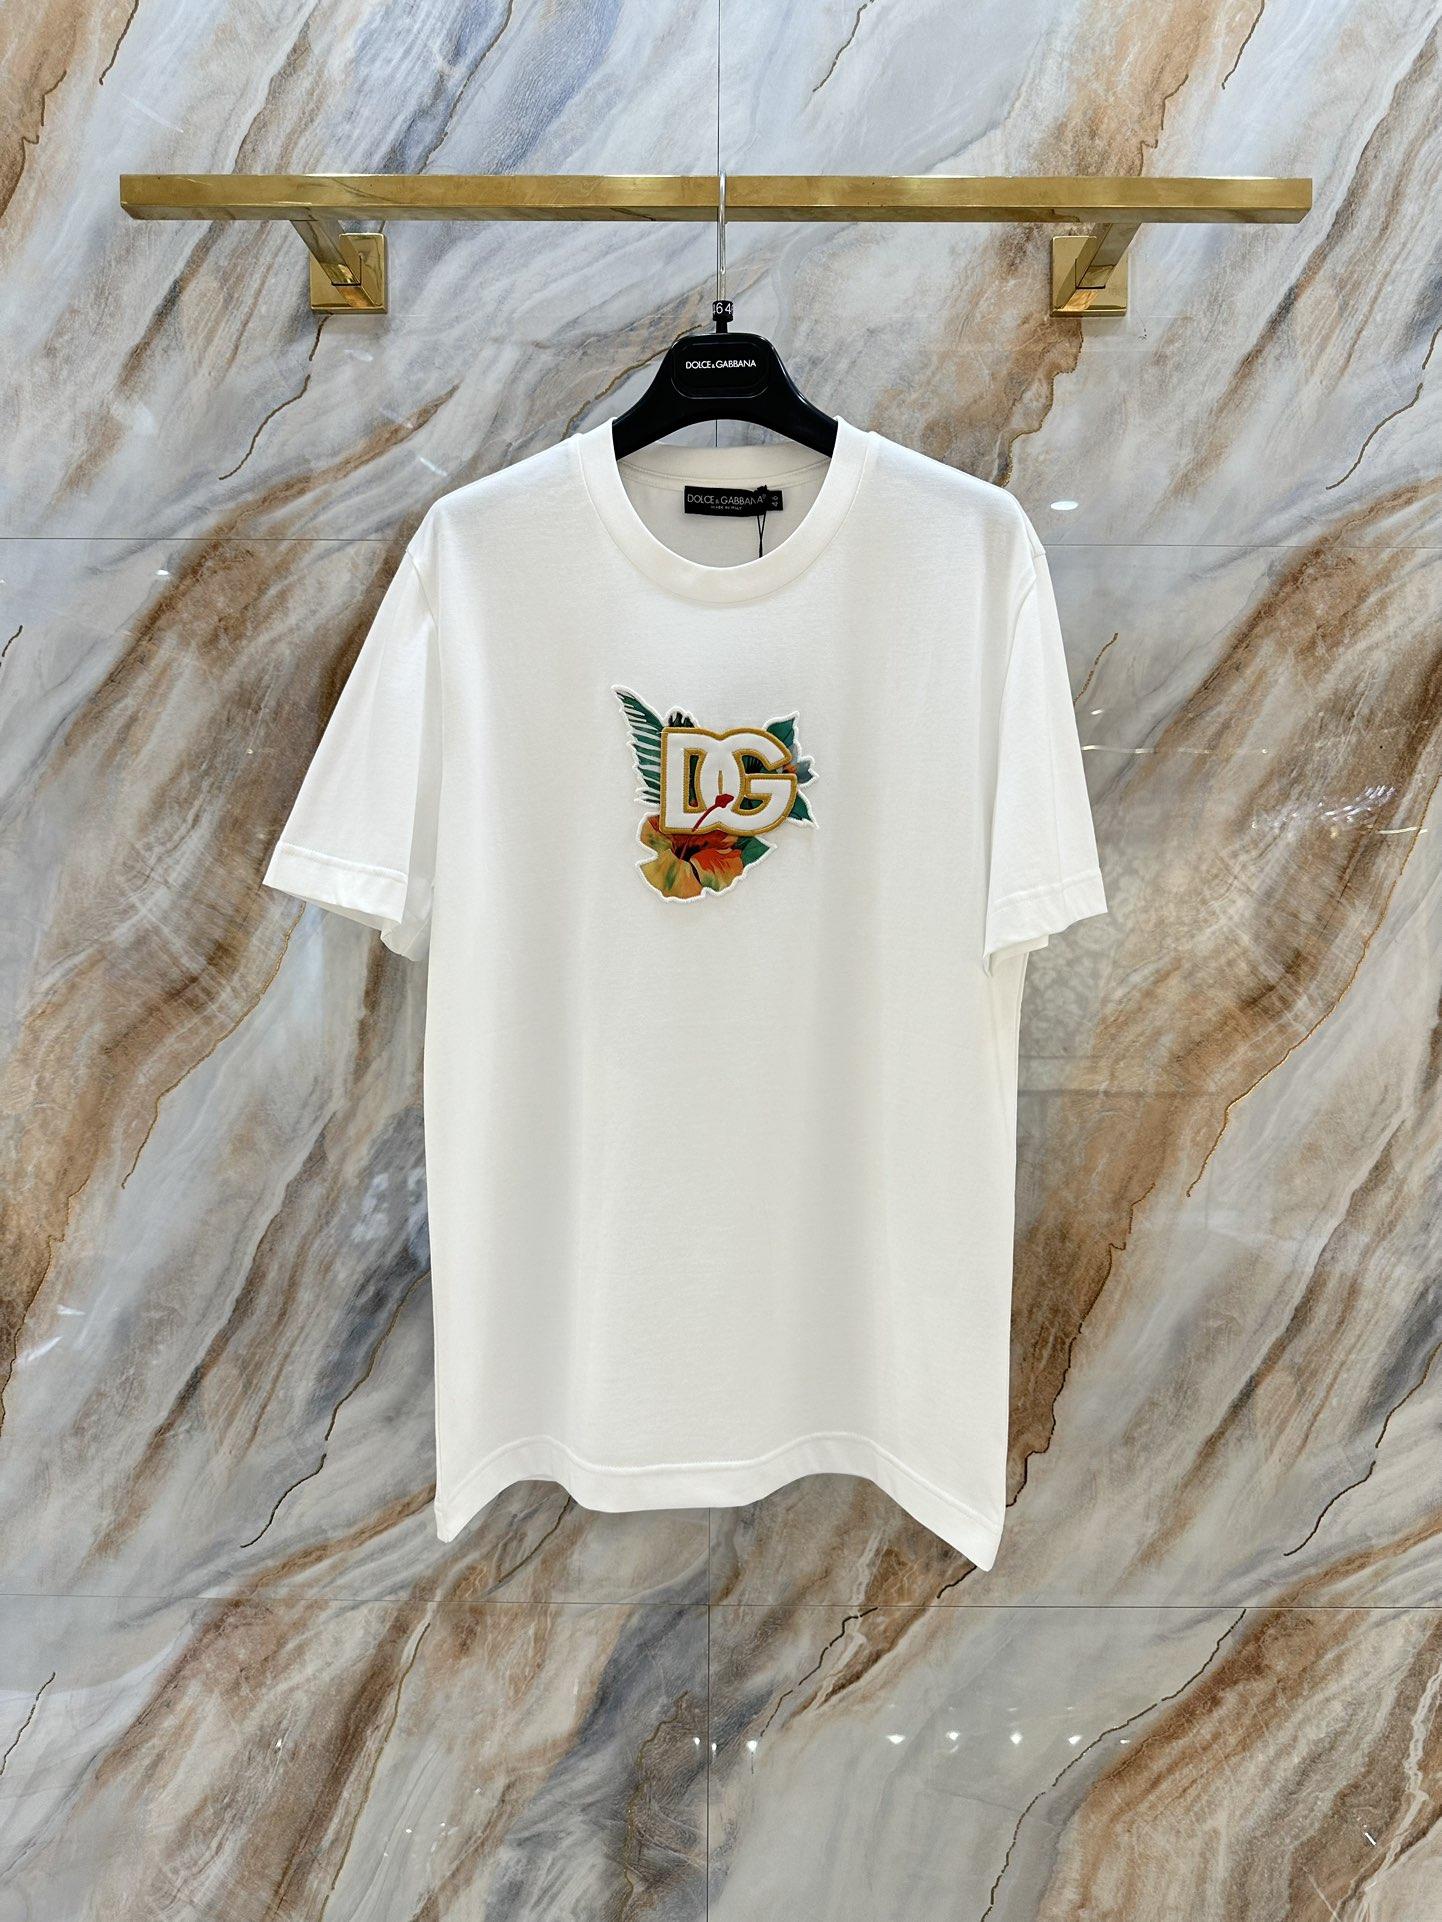 cotton-t-shirt-dg-7223_16845021141-1000